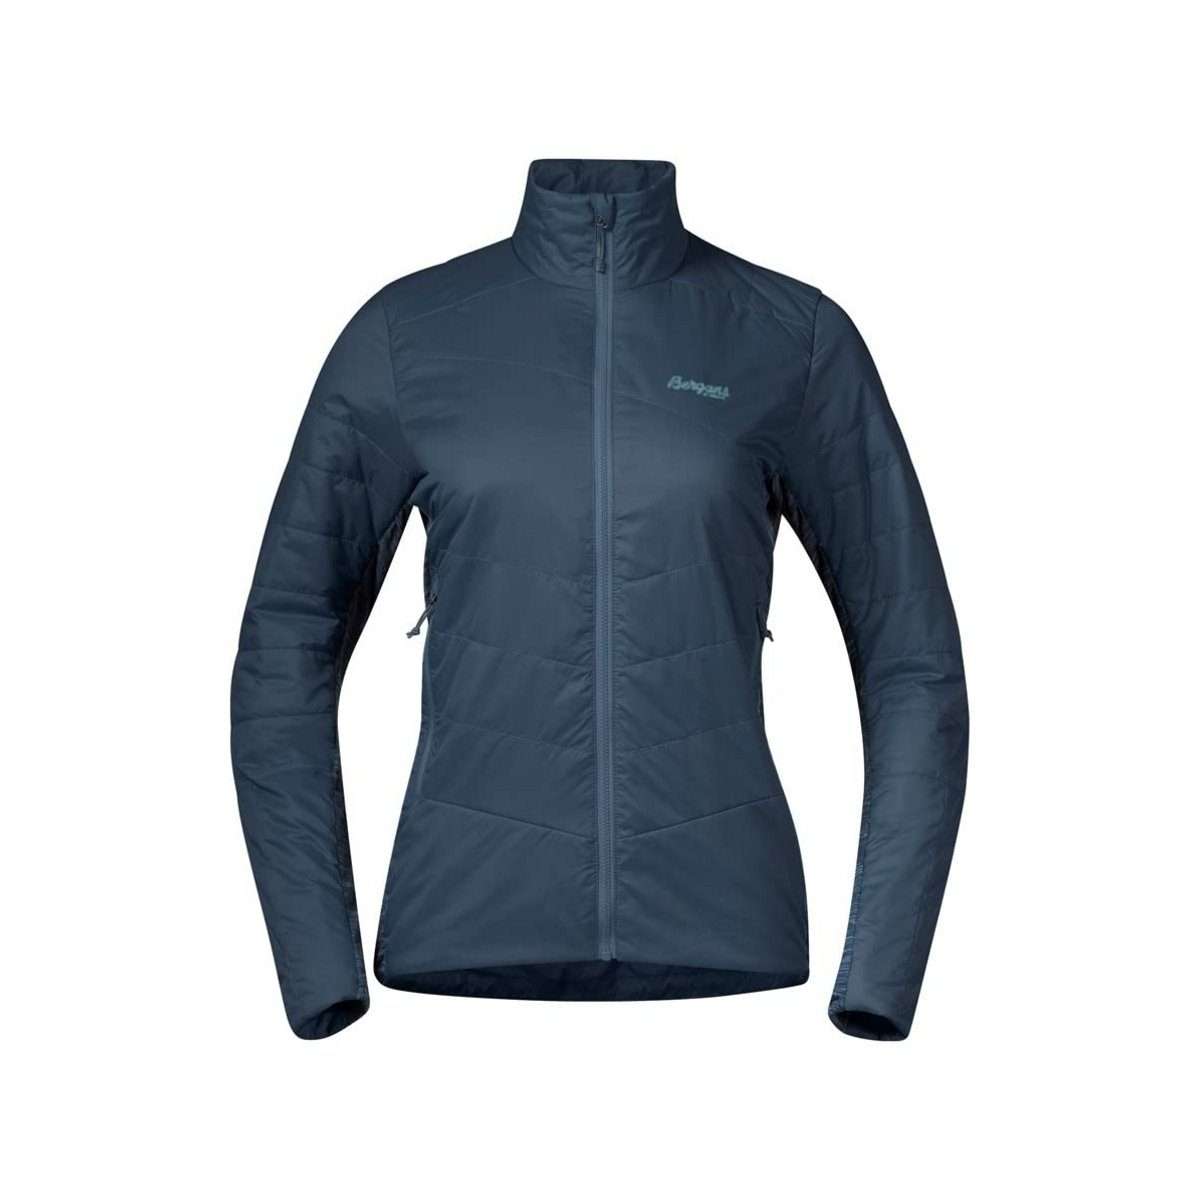 Функциональная куртка 3-в-1 синяя стандартного кроя (1 шт.)